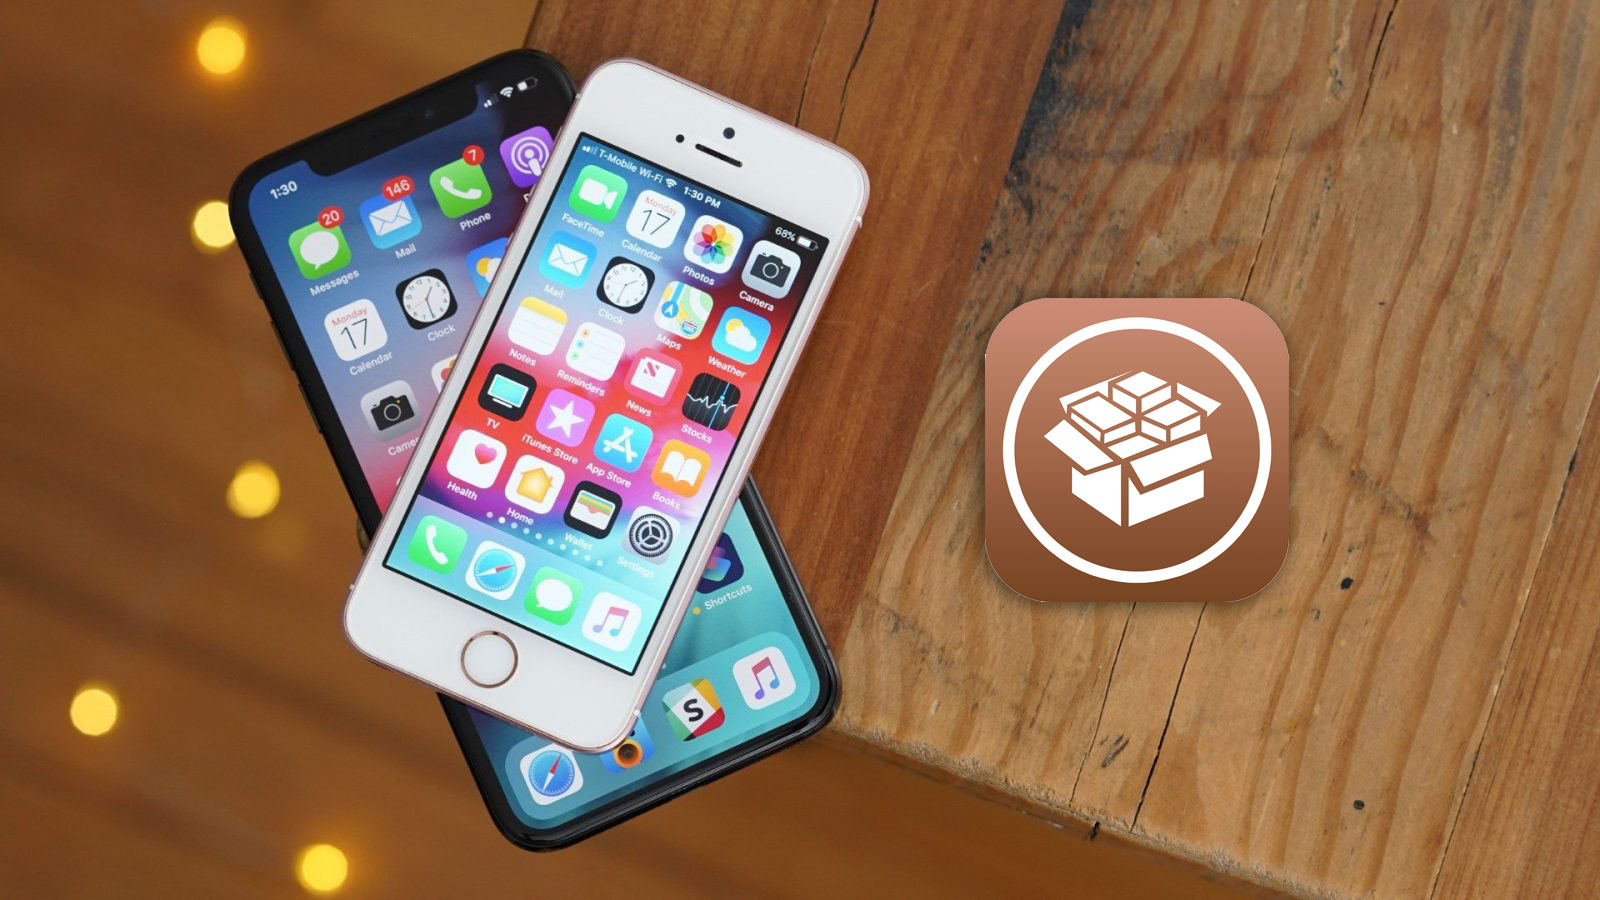 Tin tức tốt là đây: iOS 12.4 đã có thể jailbreak! Cùng tìm hiểu thêm về các mod và tweak thú vị trên điện thoại của mình trong clip này nhé!